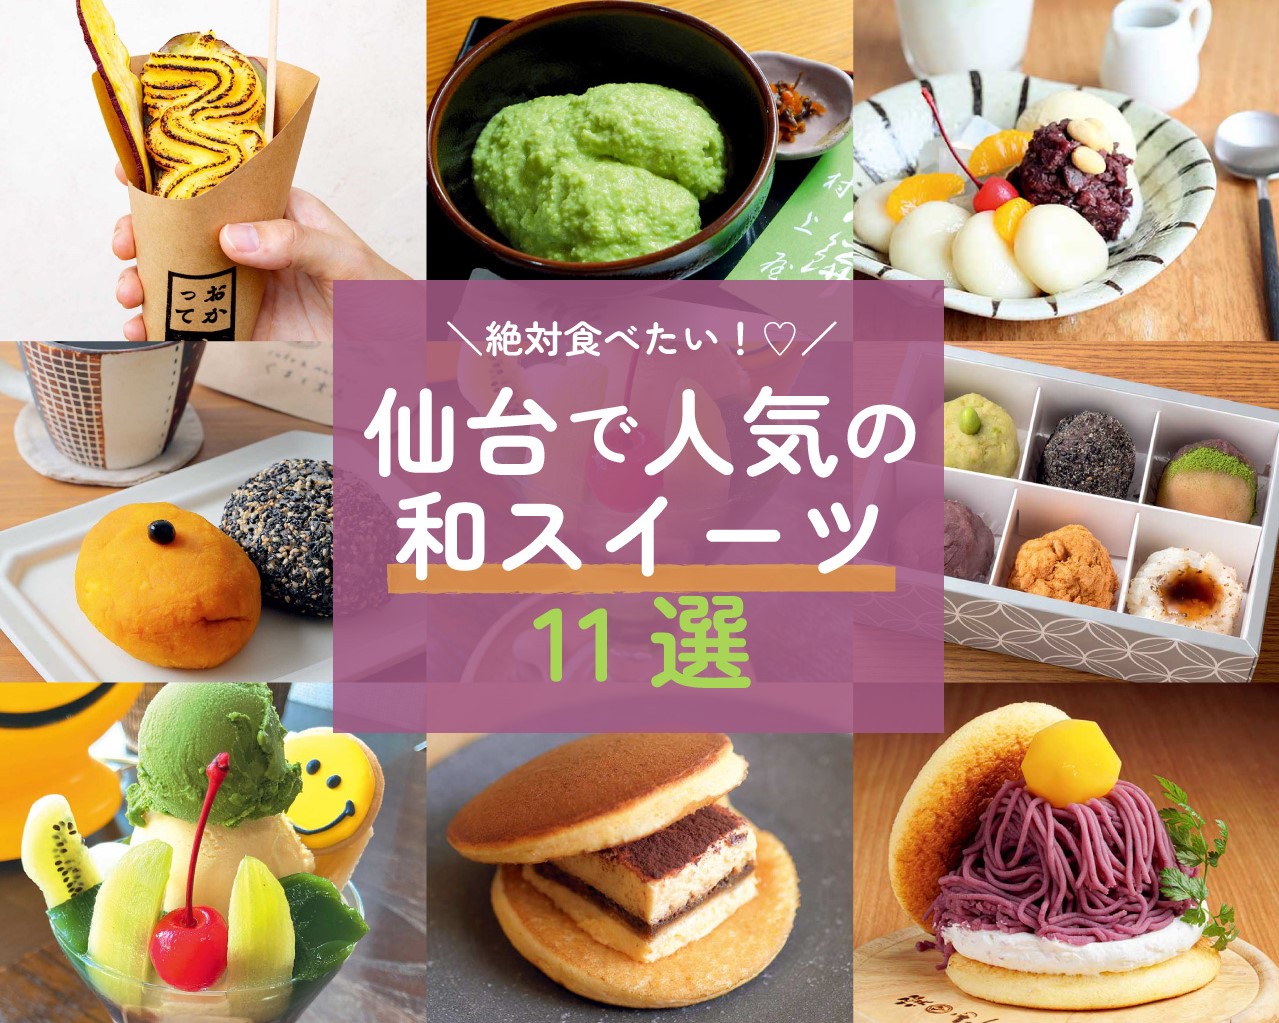 仙台で絶対食べたい 行列ができる和スイーツ11選 日刊せんだいタウン情報s Style Web